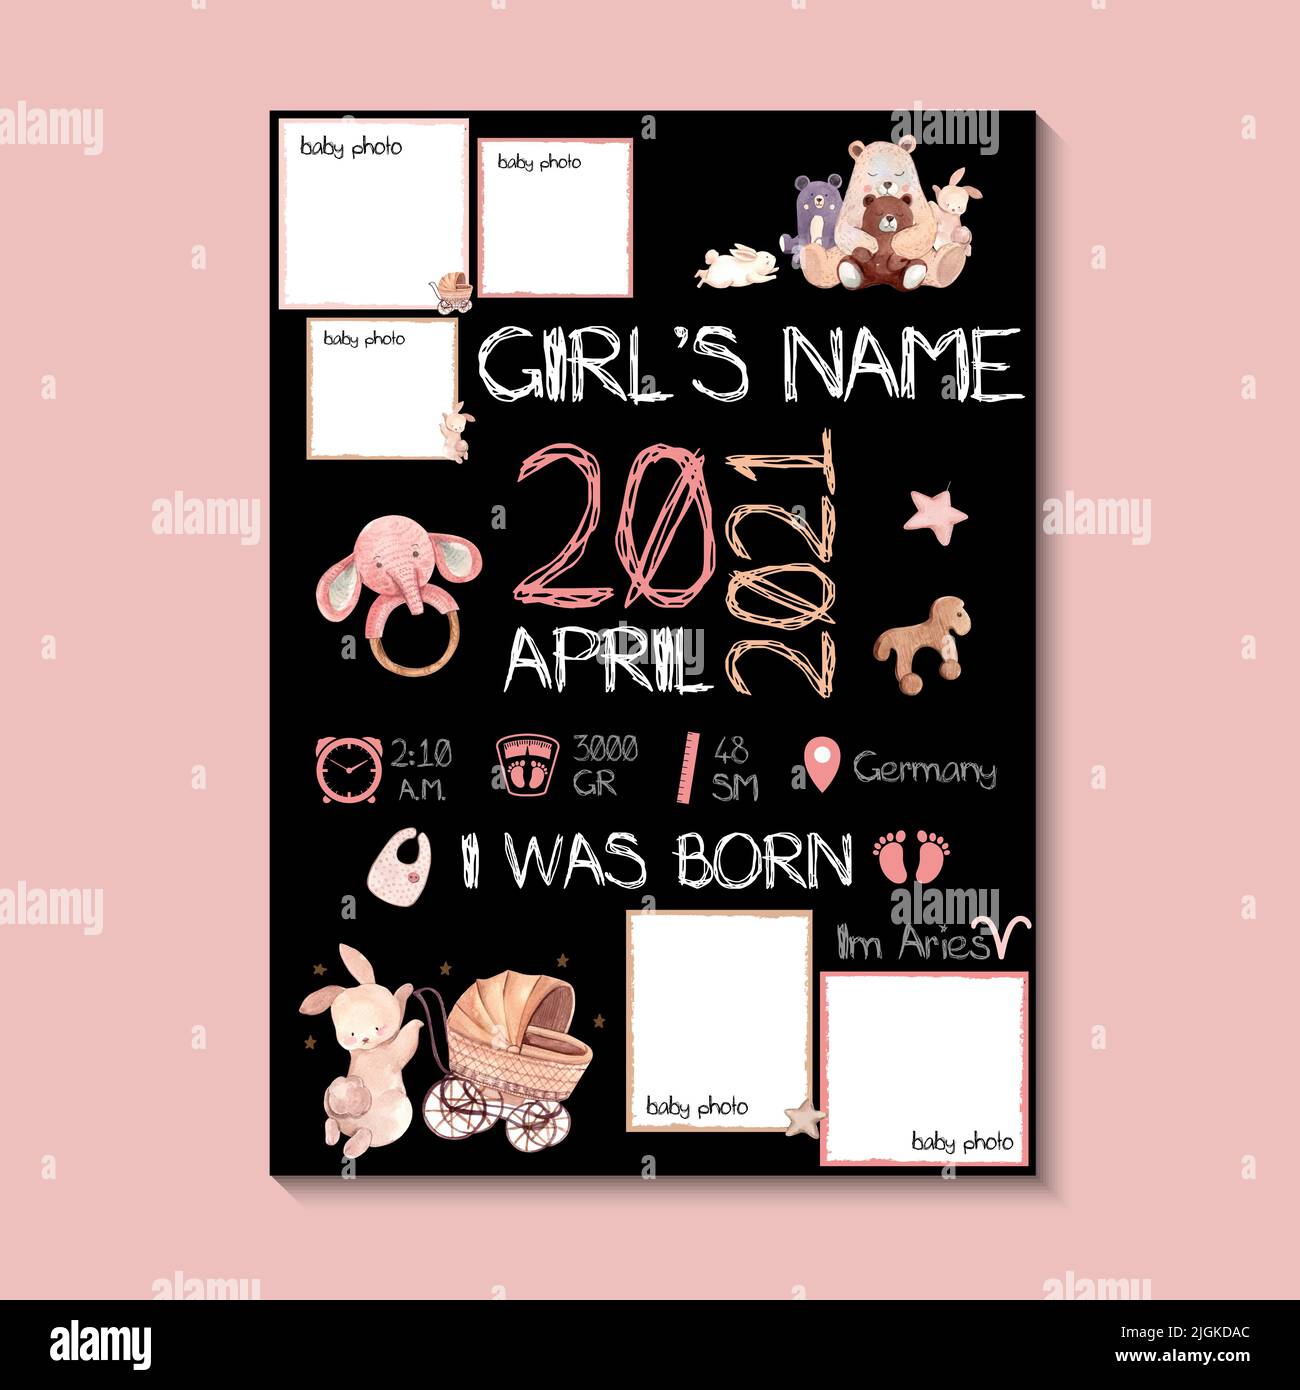 Poster ragazza, altezza, peso, data di nascita. Illustrazione vettoriale di orsacchiotto e forniture per bambini su sfondo rosa e nero. Illustrazione Vettoriale